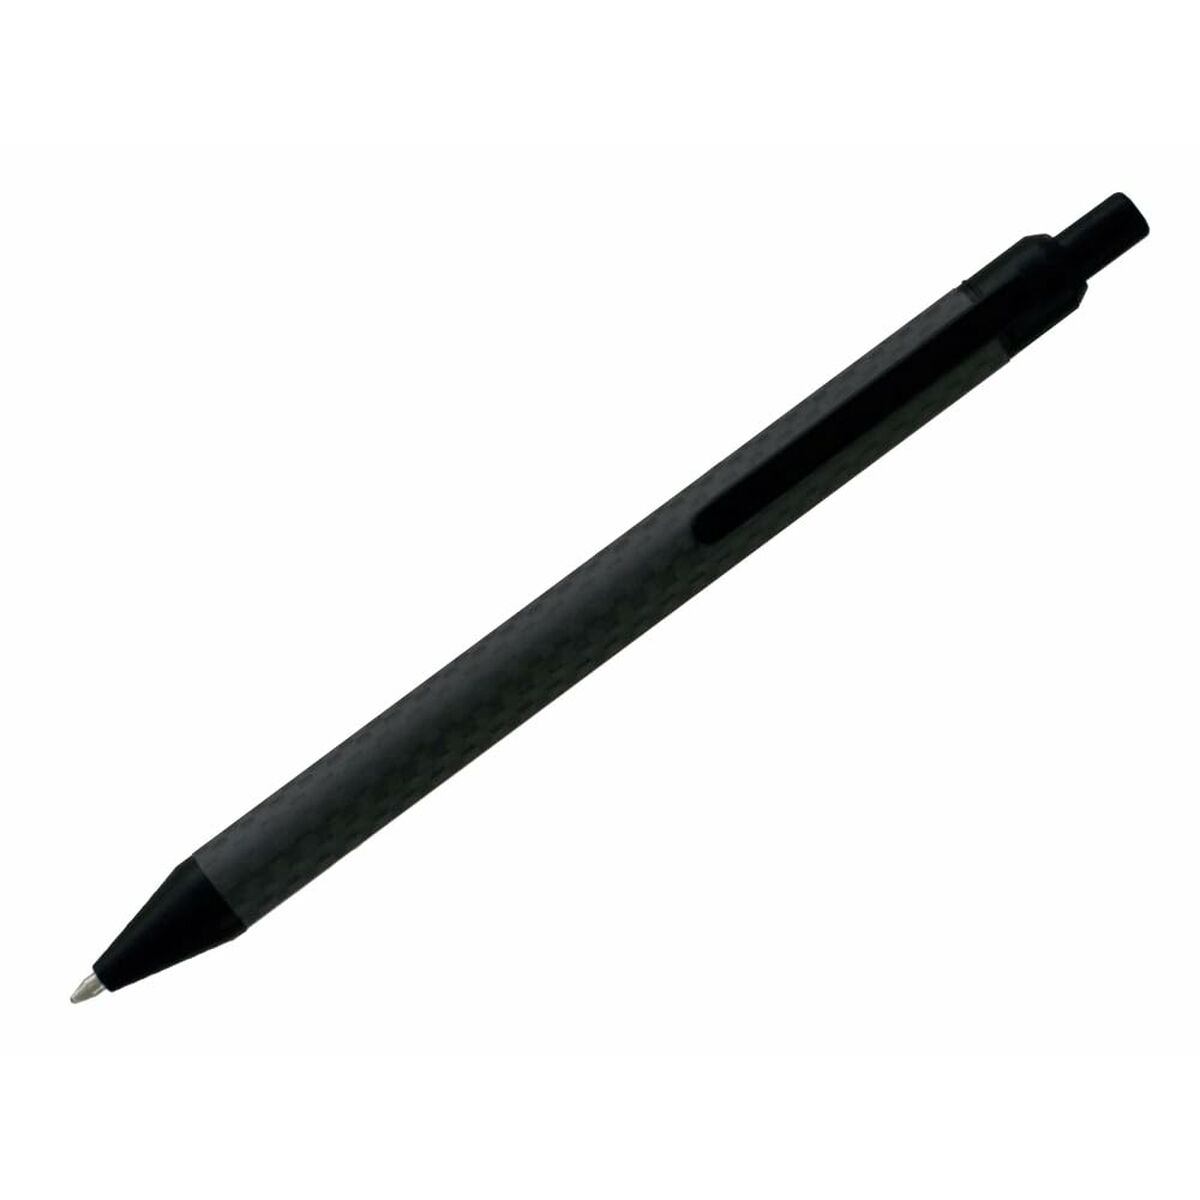 Penna för flytande bläck Belius BB222 Blå 1 mm-Kontor och Kontorsmaterial, Kulspetspennor, pennor och skrivverktyg-Belius-peaceofhome.se